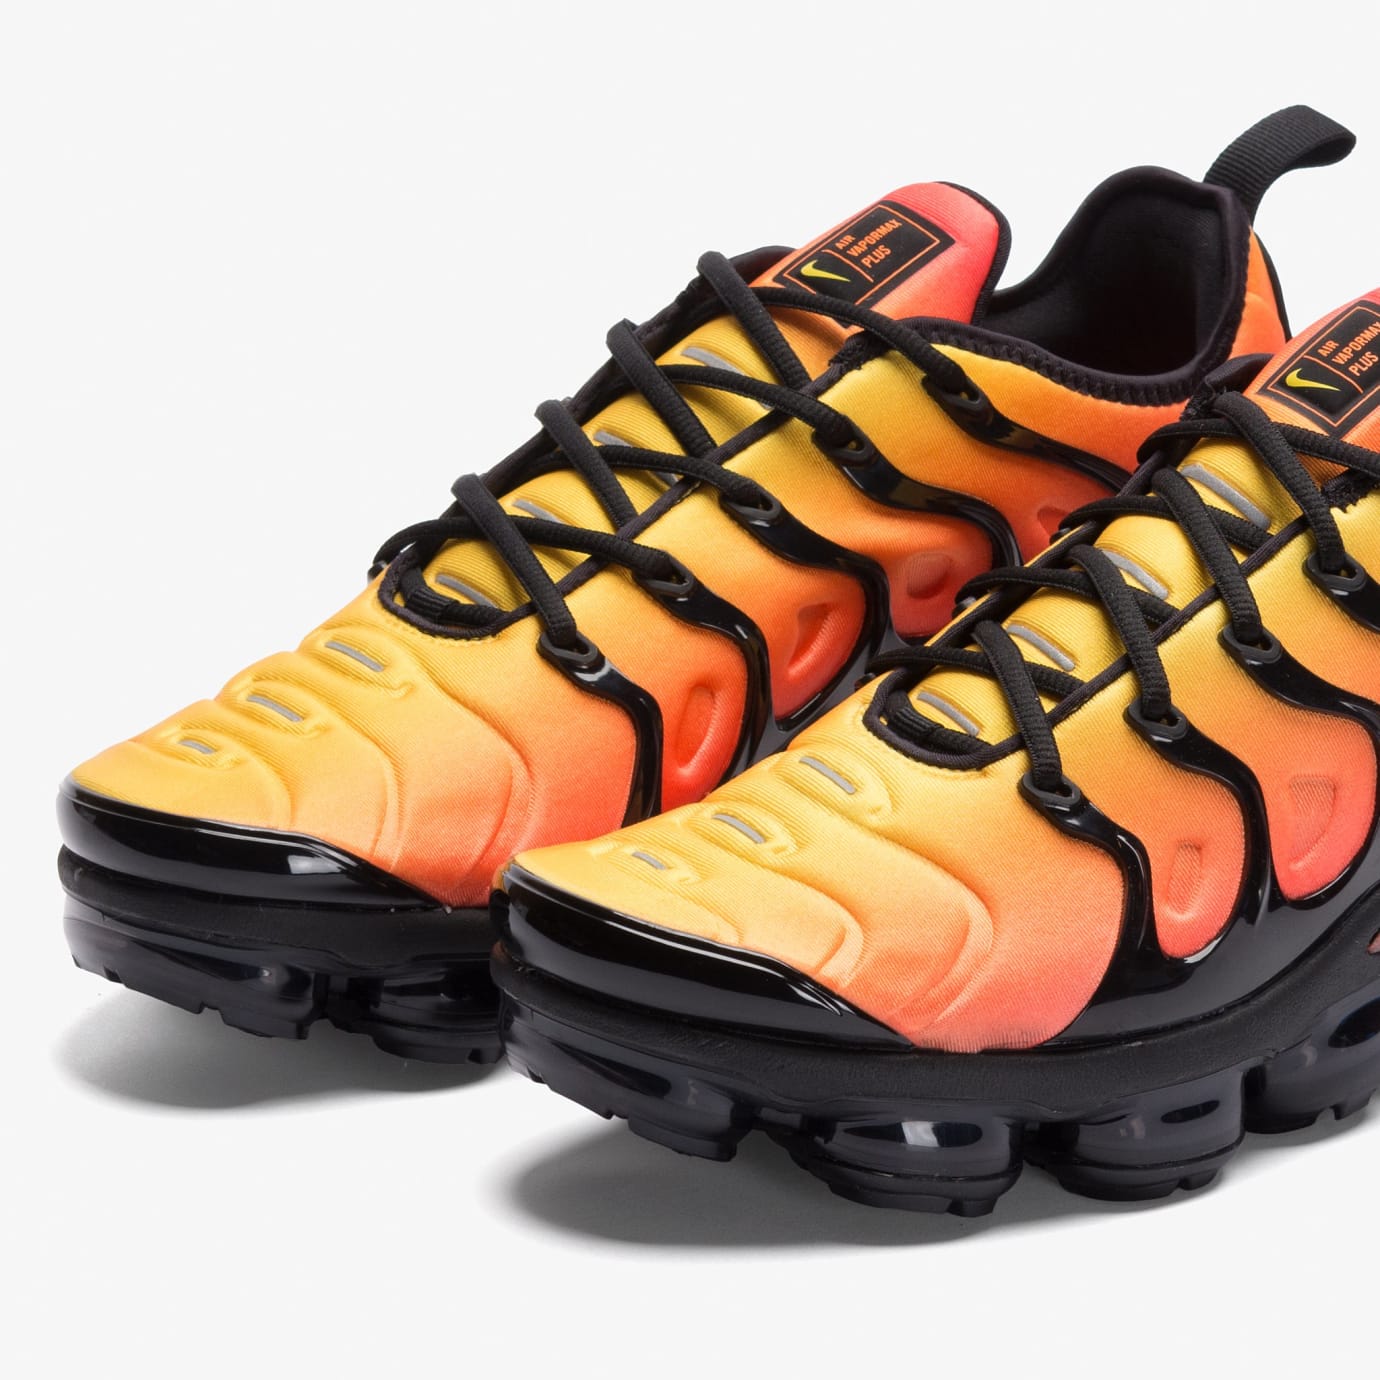 Nike VaporMax Plus 'Sunset' Black/Total Orange (Toe)